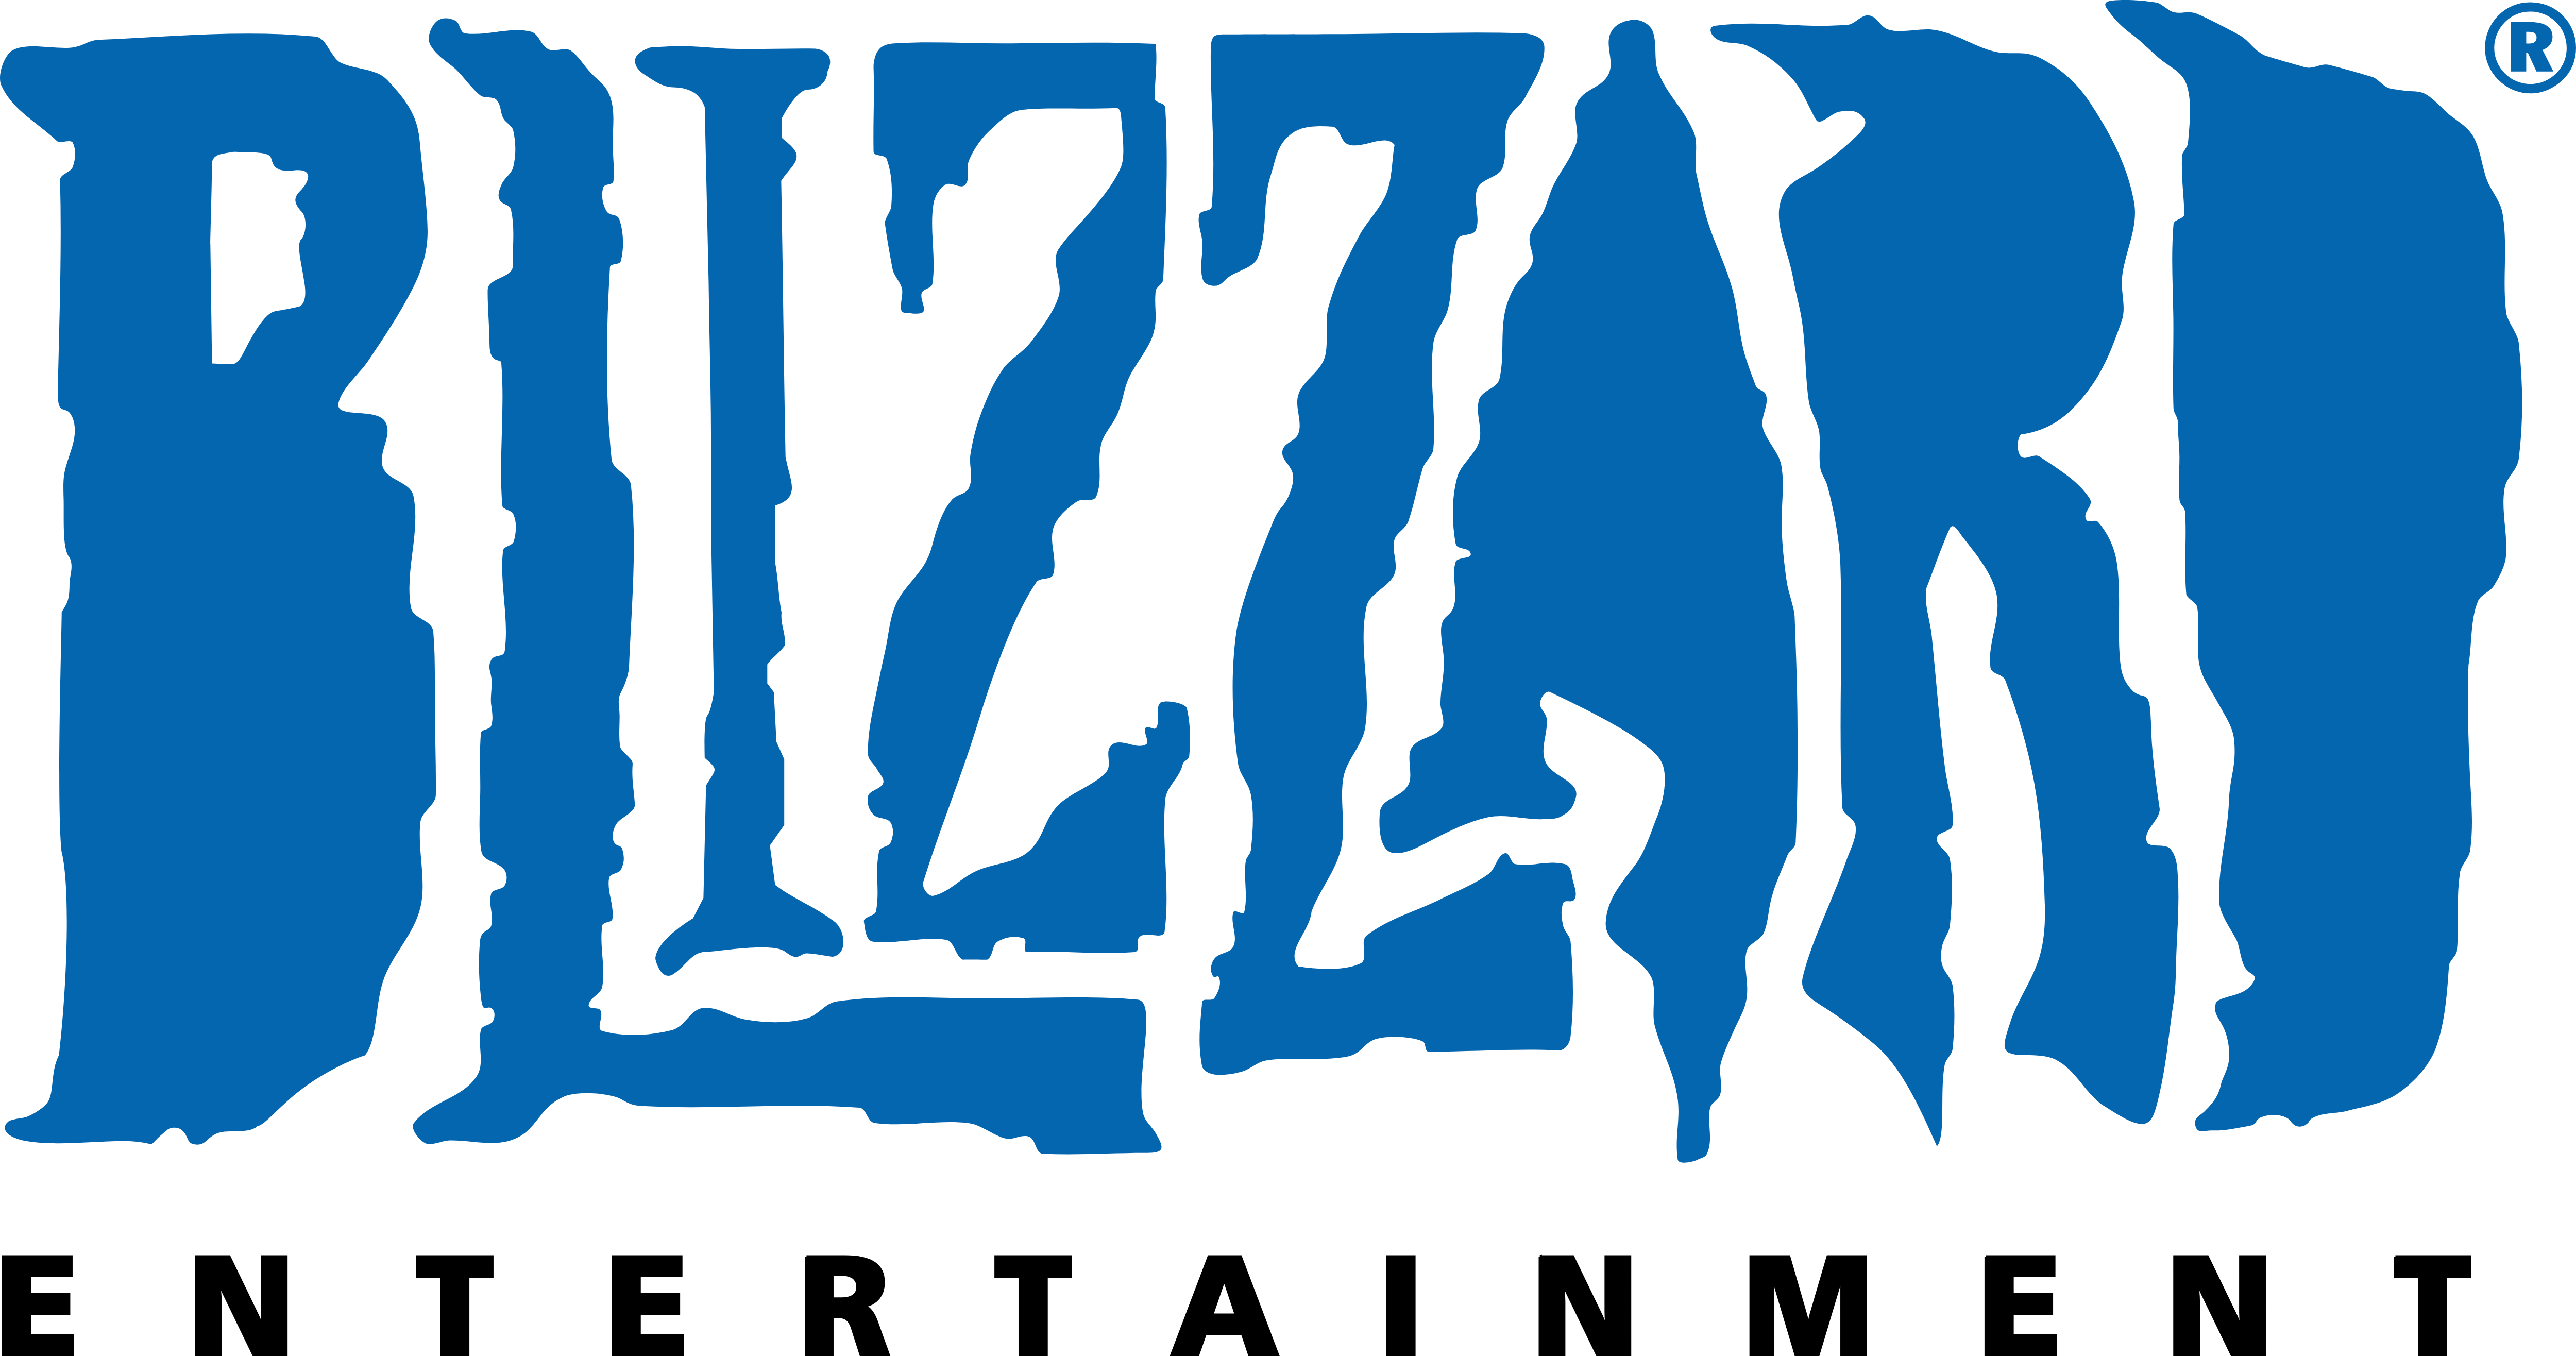 Blizzard Entertainment Logo PNG Image